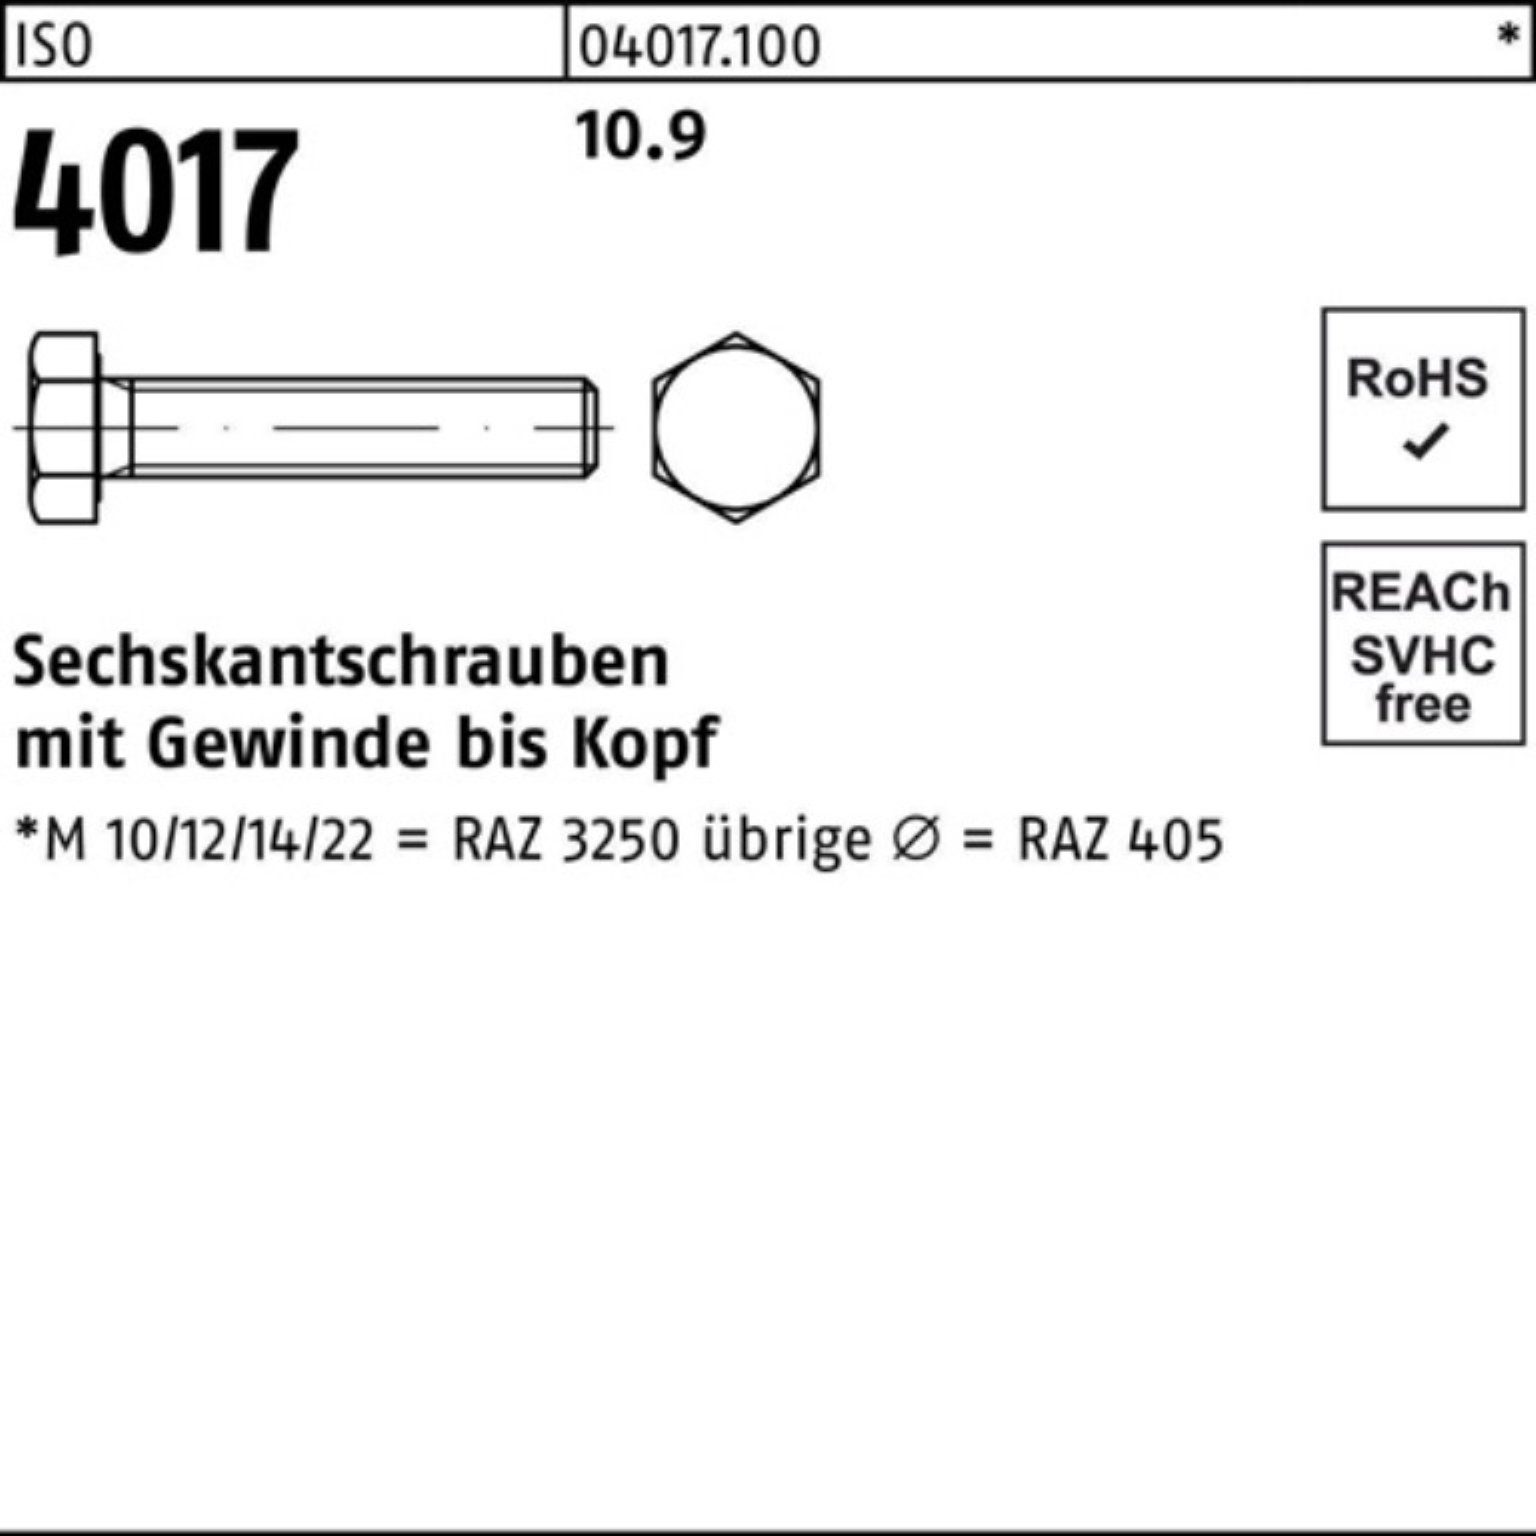 VG 4 ISO Sechskantschraube 4017 Sechskantschraube ISO 100er Pack M12x 10.9 Bufab 50 Stück 130